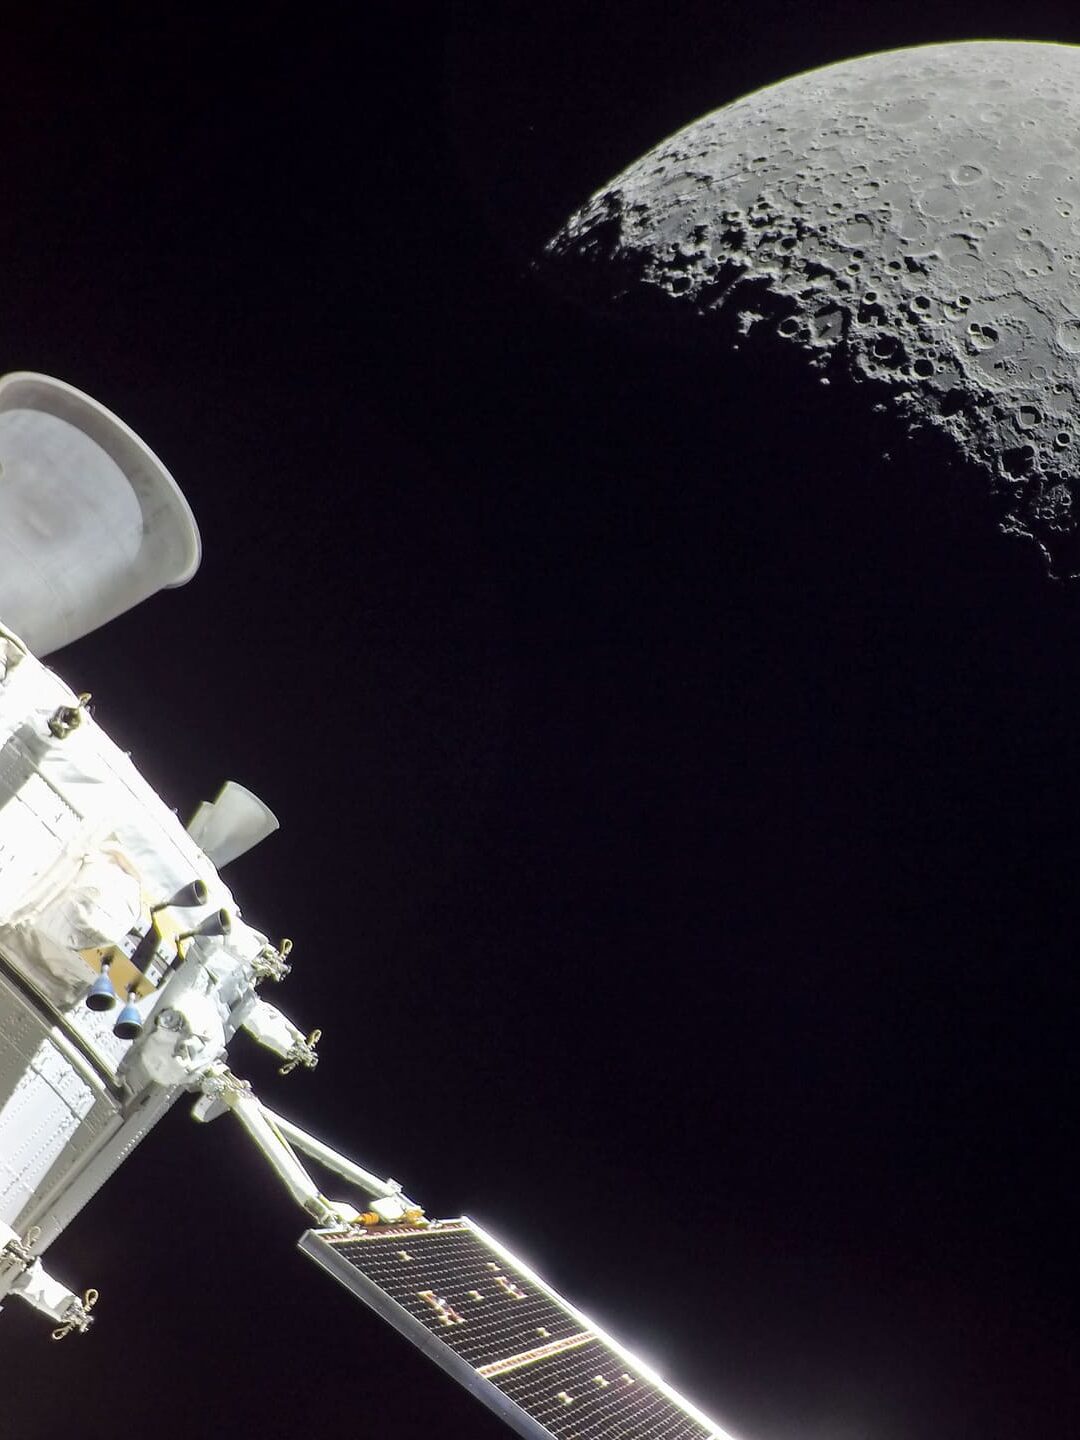 Europäisches Servicemodul fliegt am Mond vorbei;
@ NASA/ESA